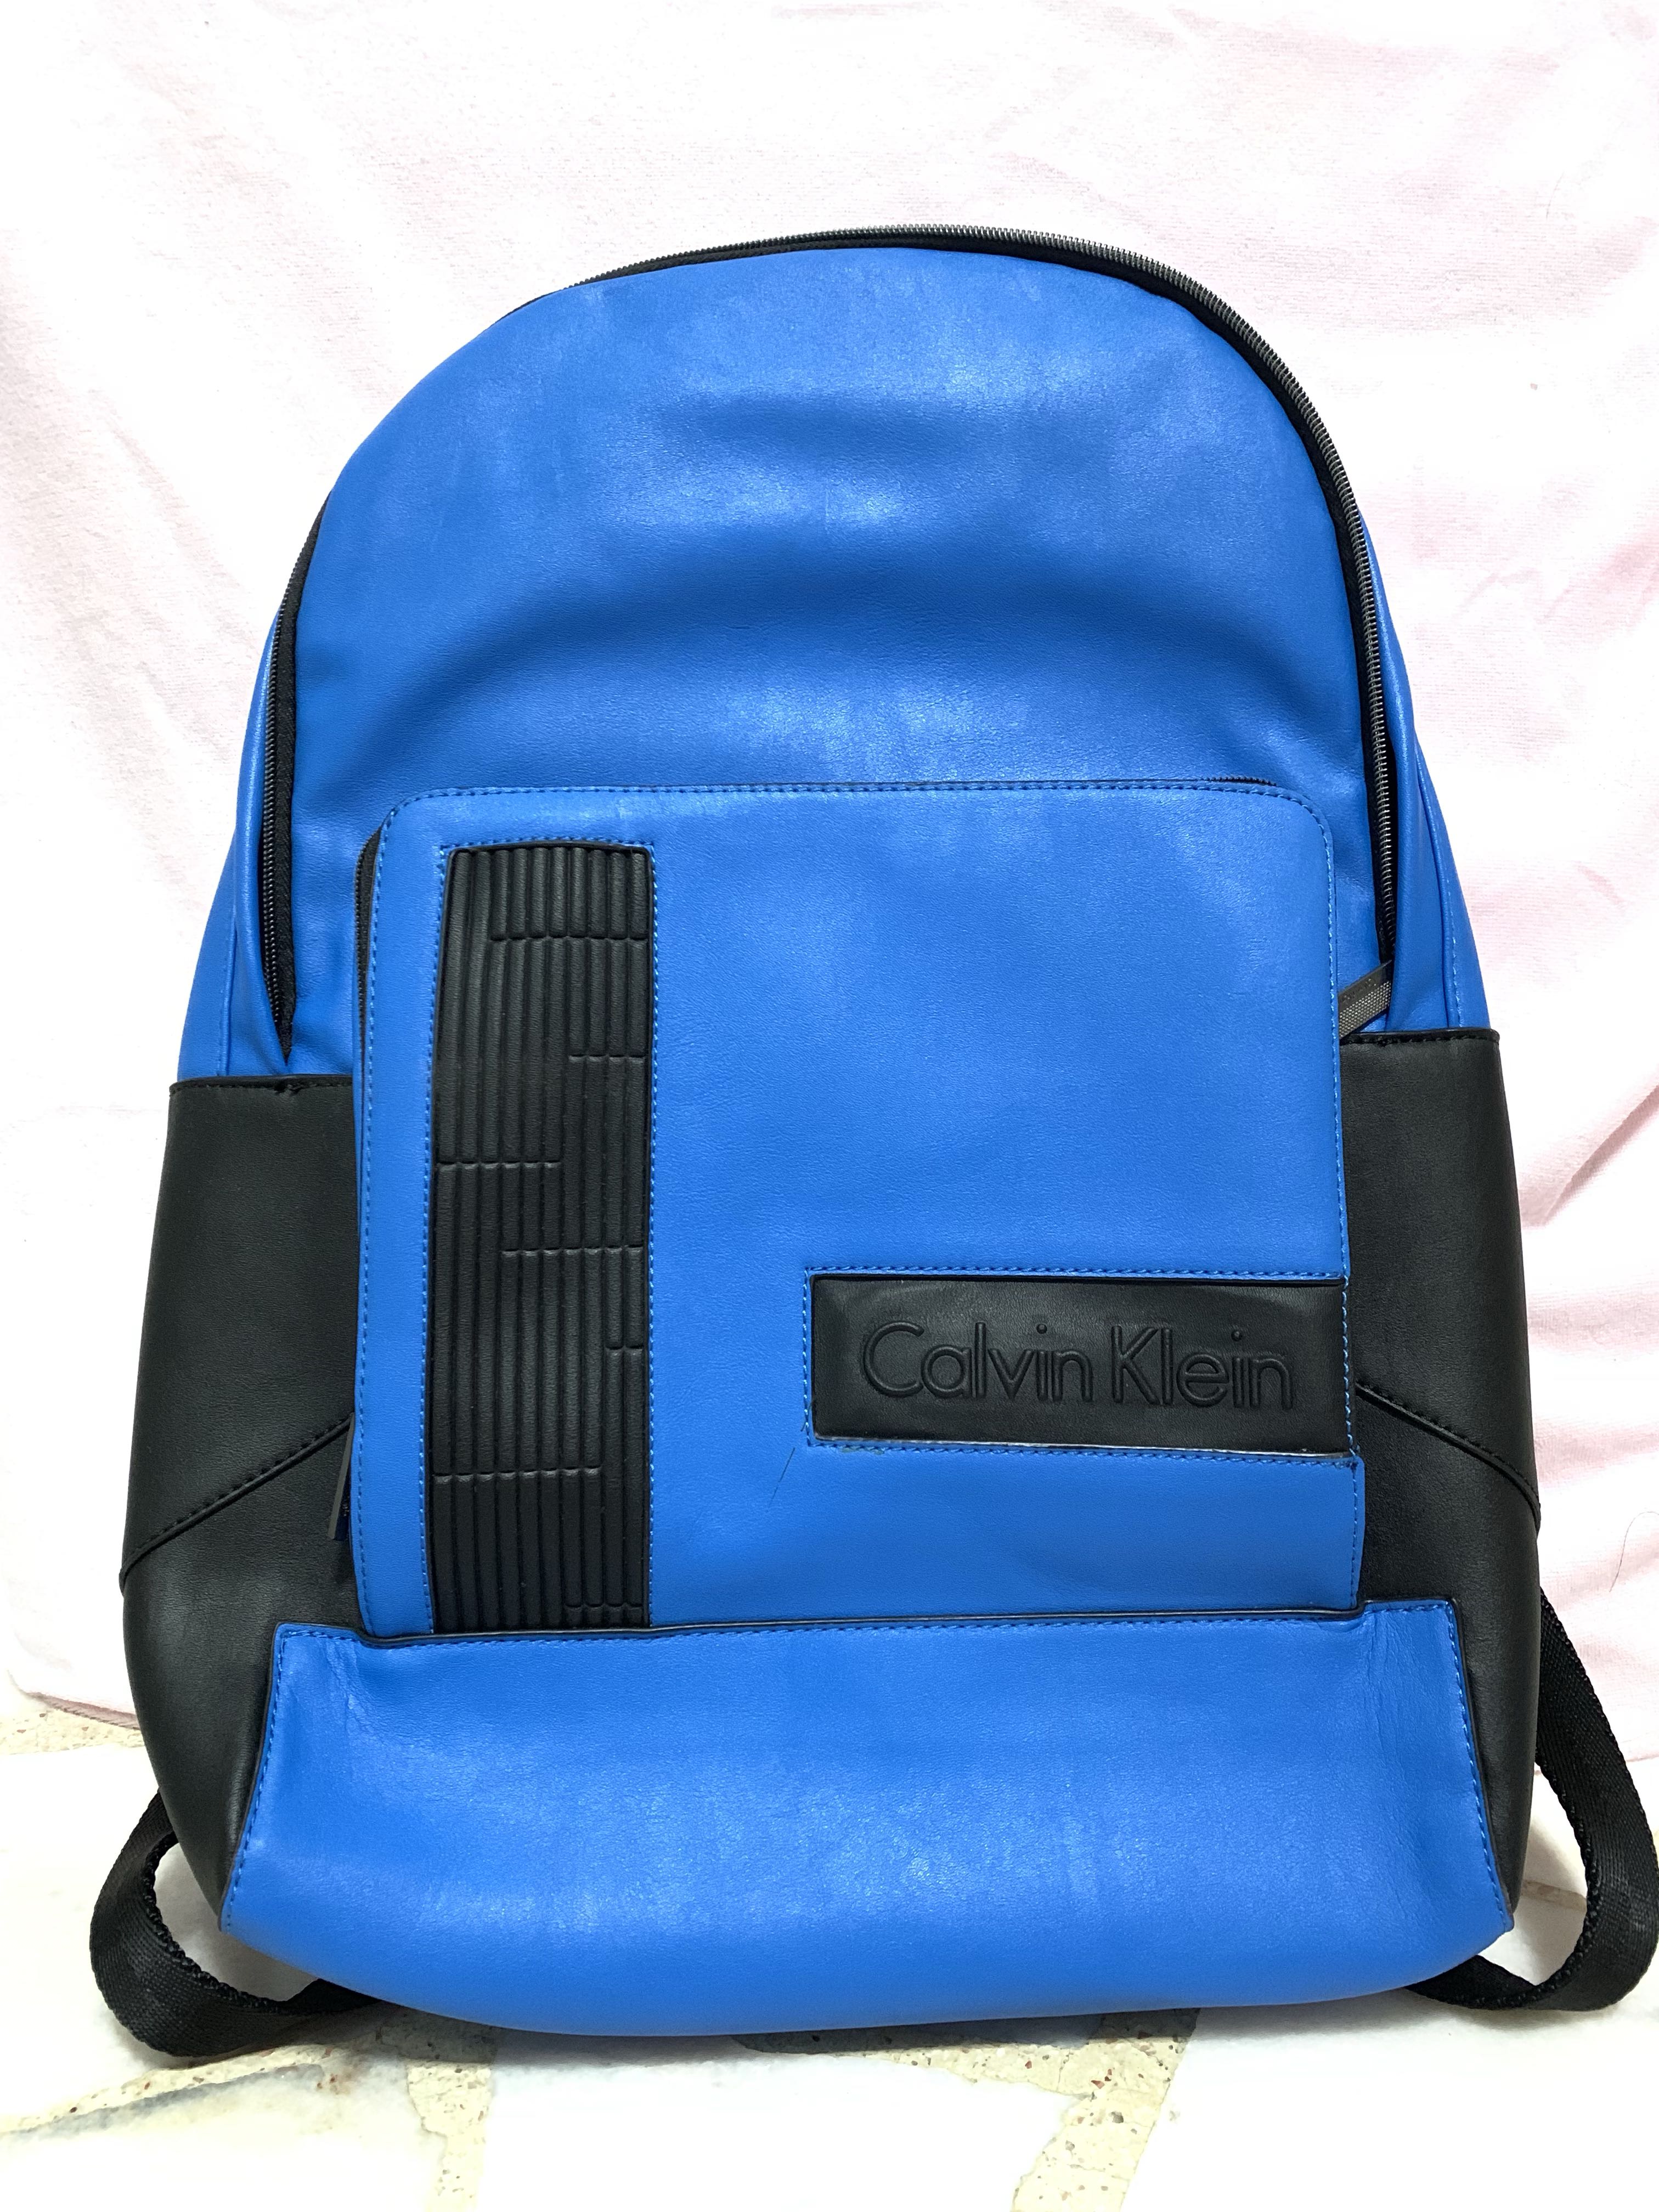 ck laptop backpack